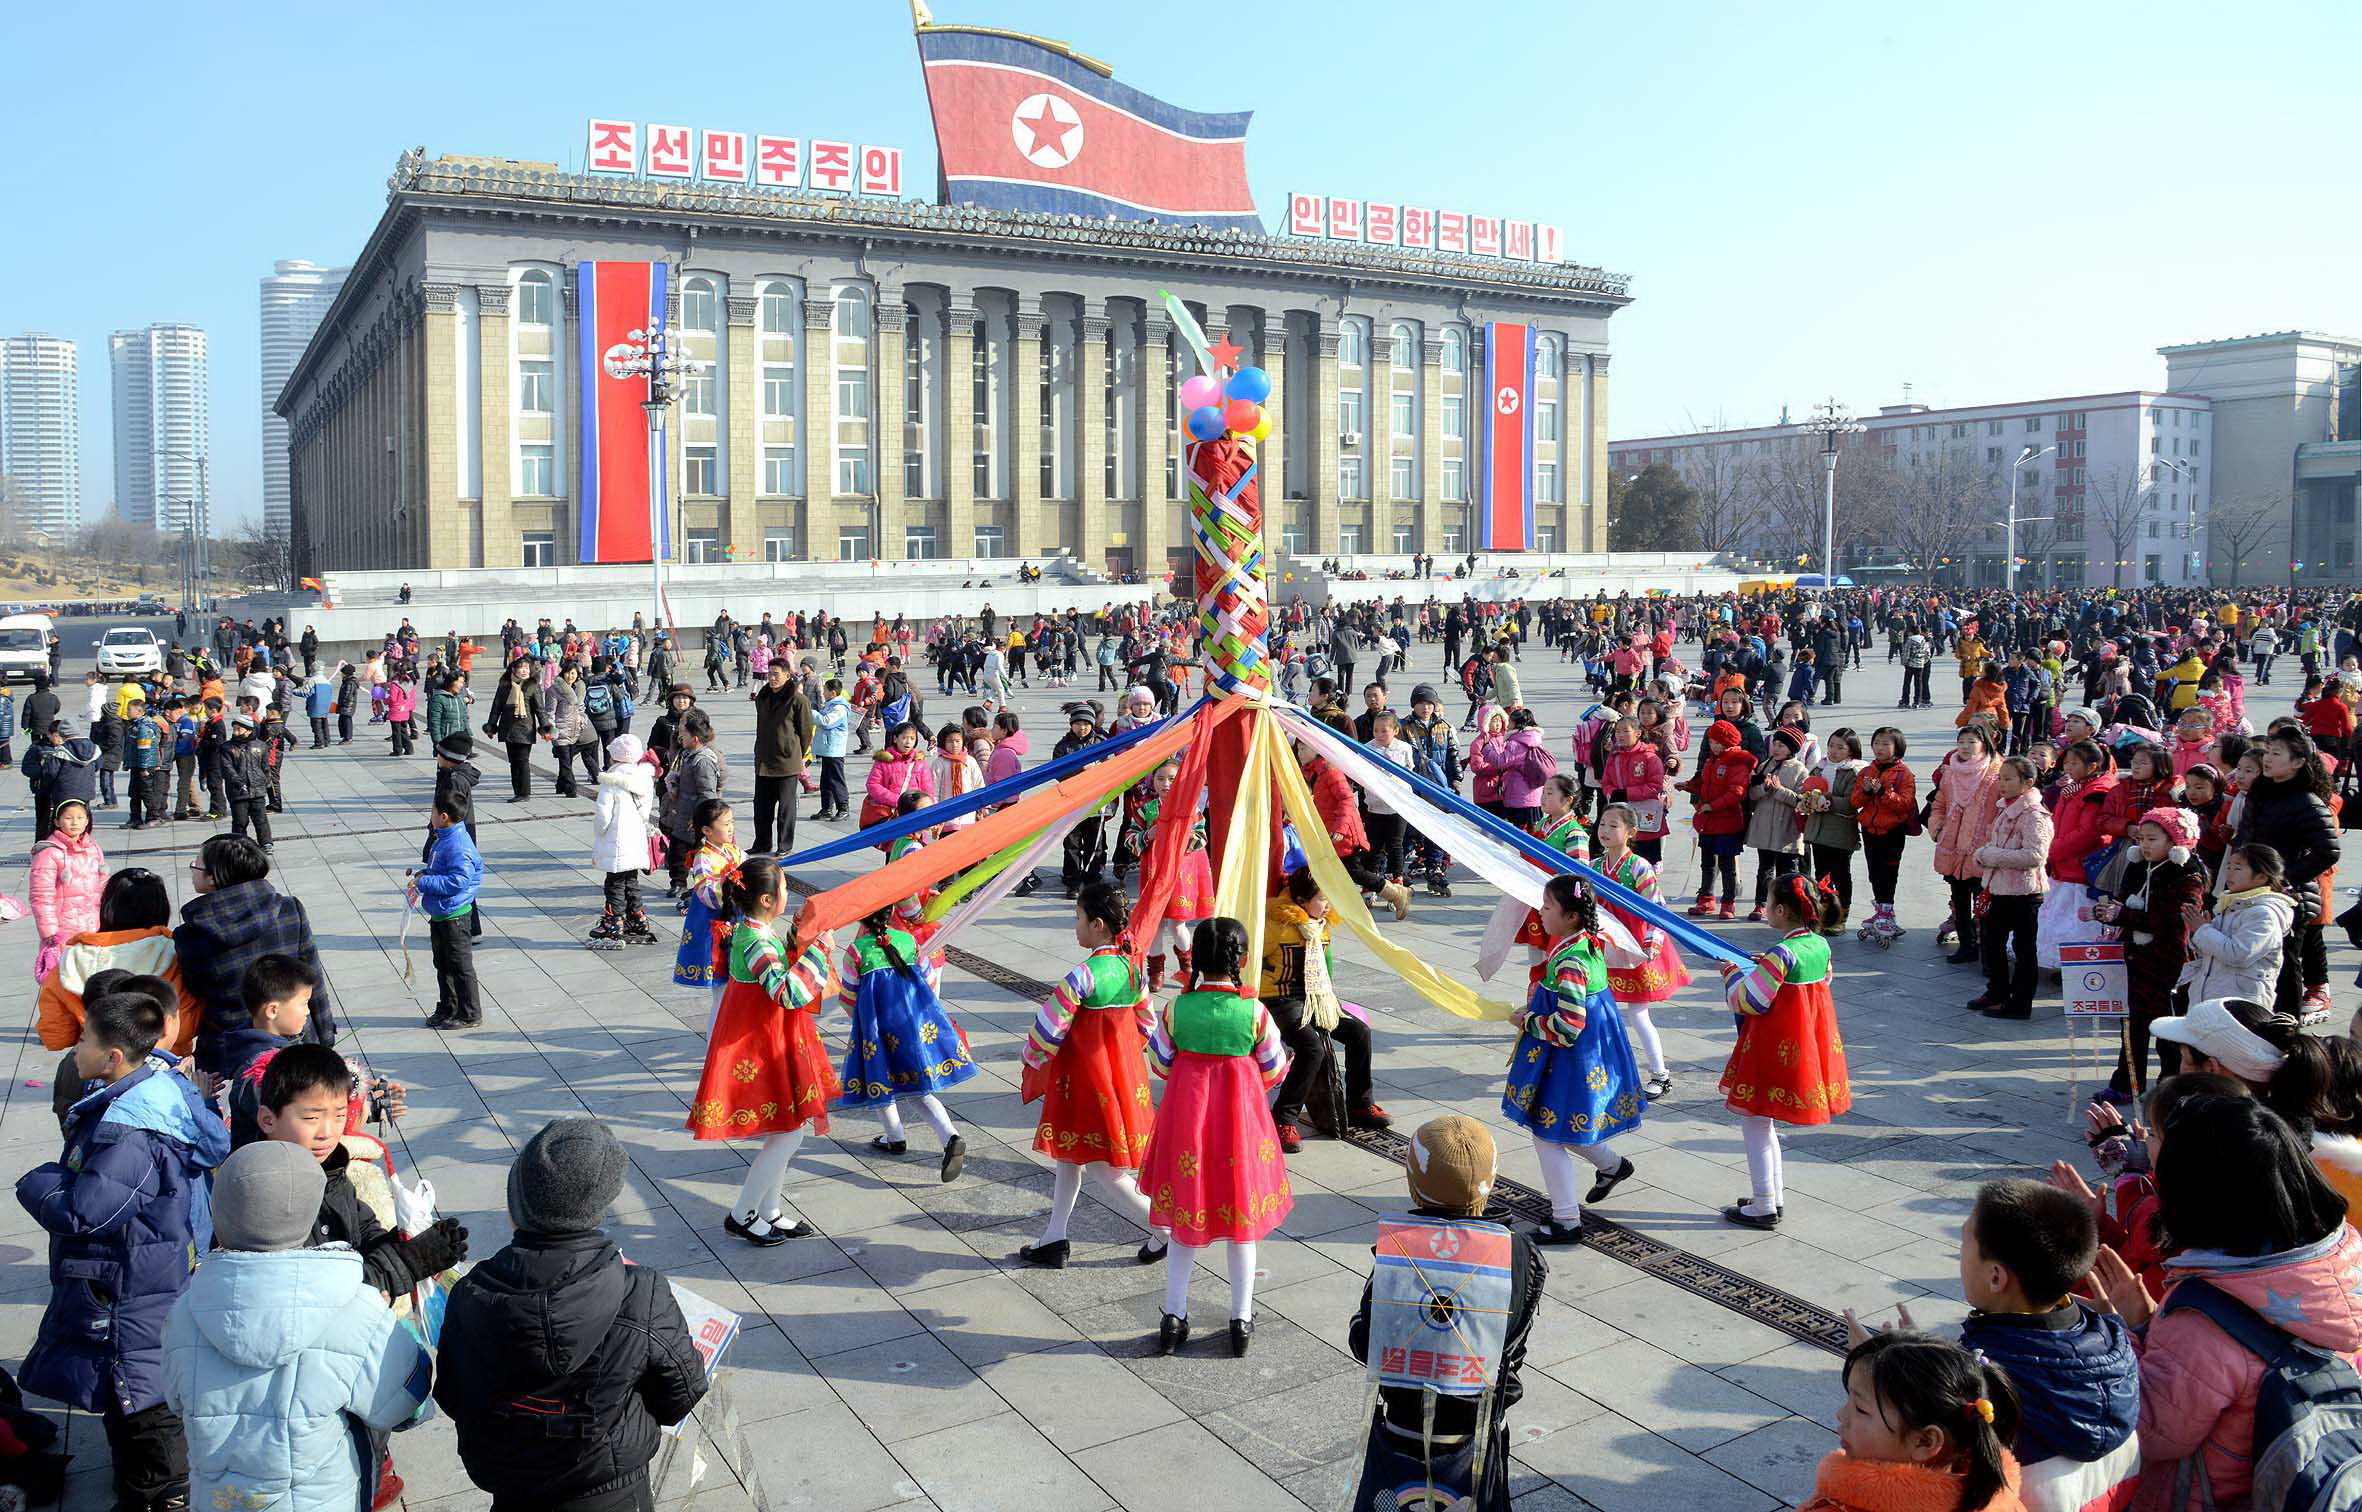 Festeggiamenti per il capodanno lunare nella piazza di Pyongyang in Corea del Nord. Fonte: ZUMA Press/Global Look Press